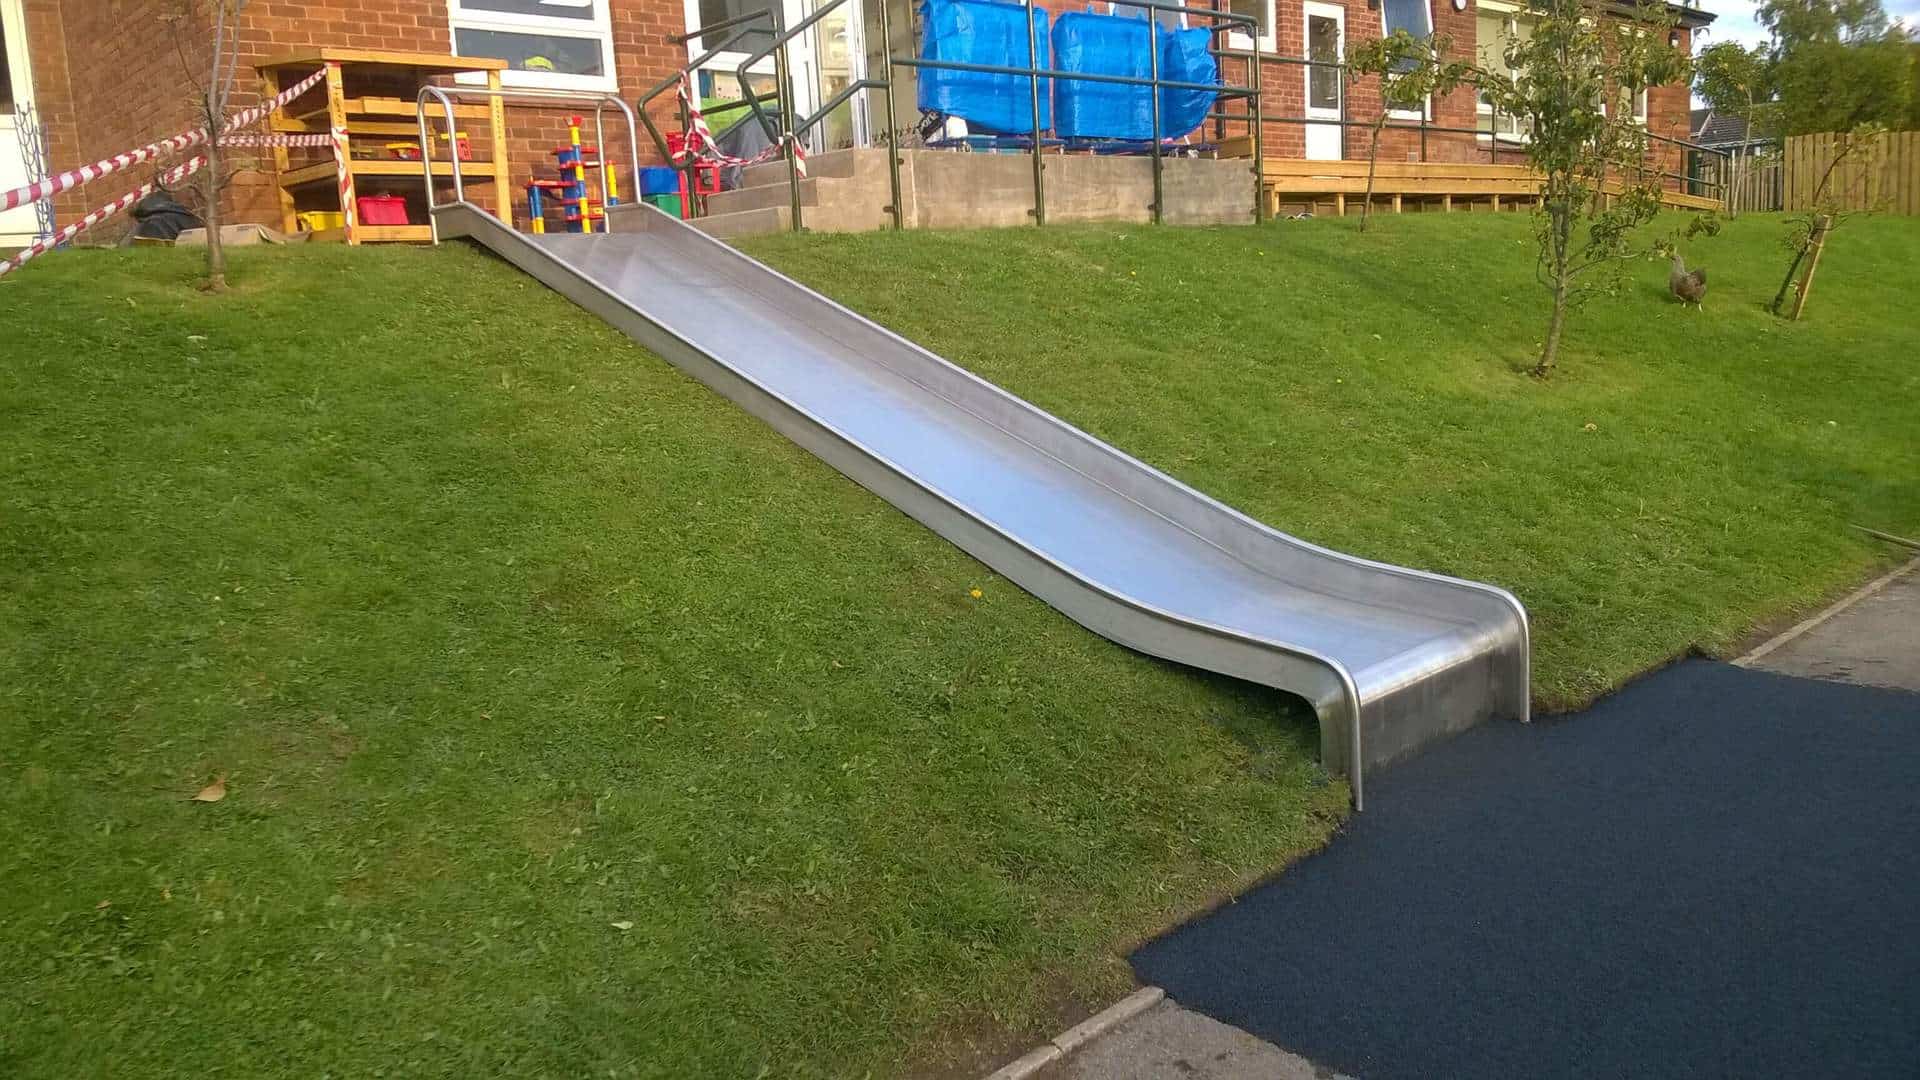 Playground Slide in Grass Bank